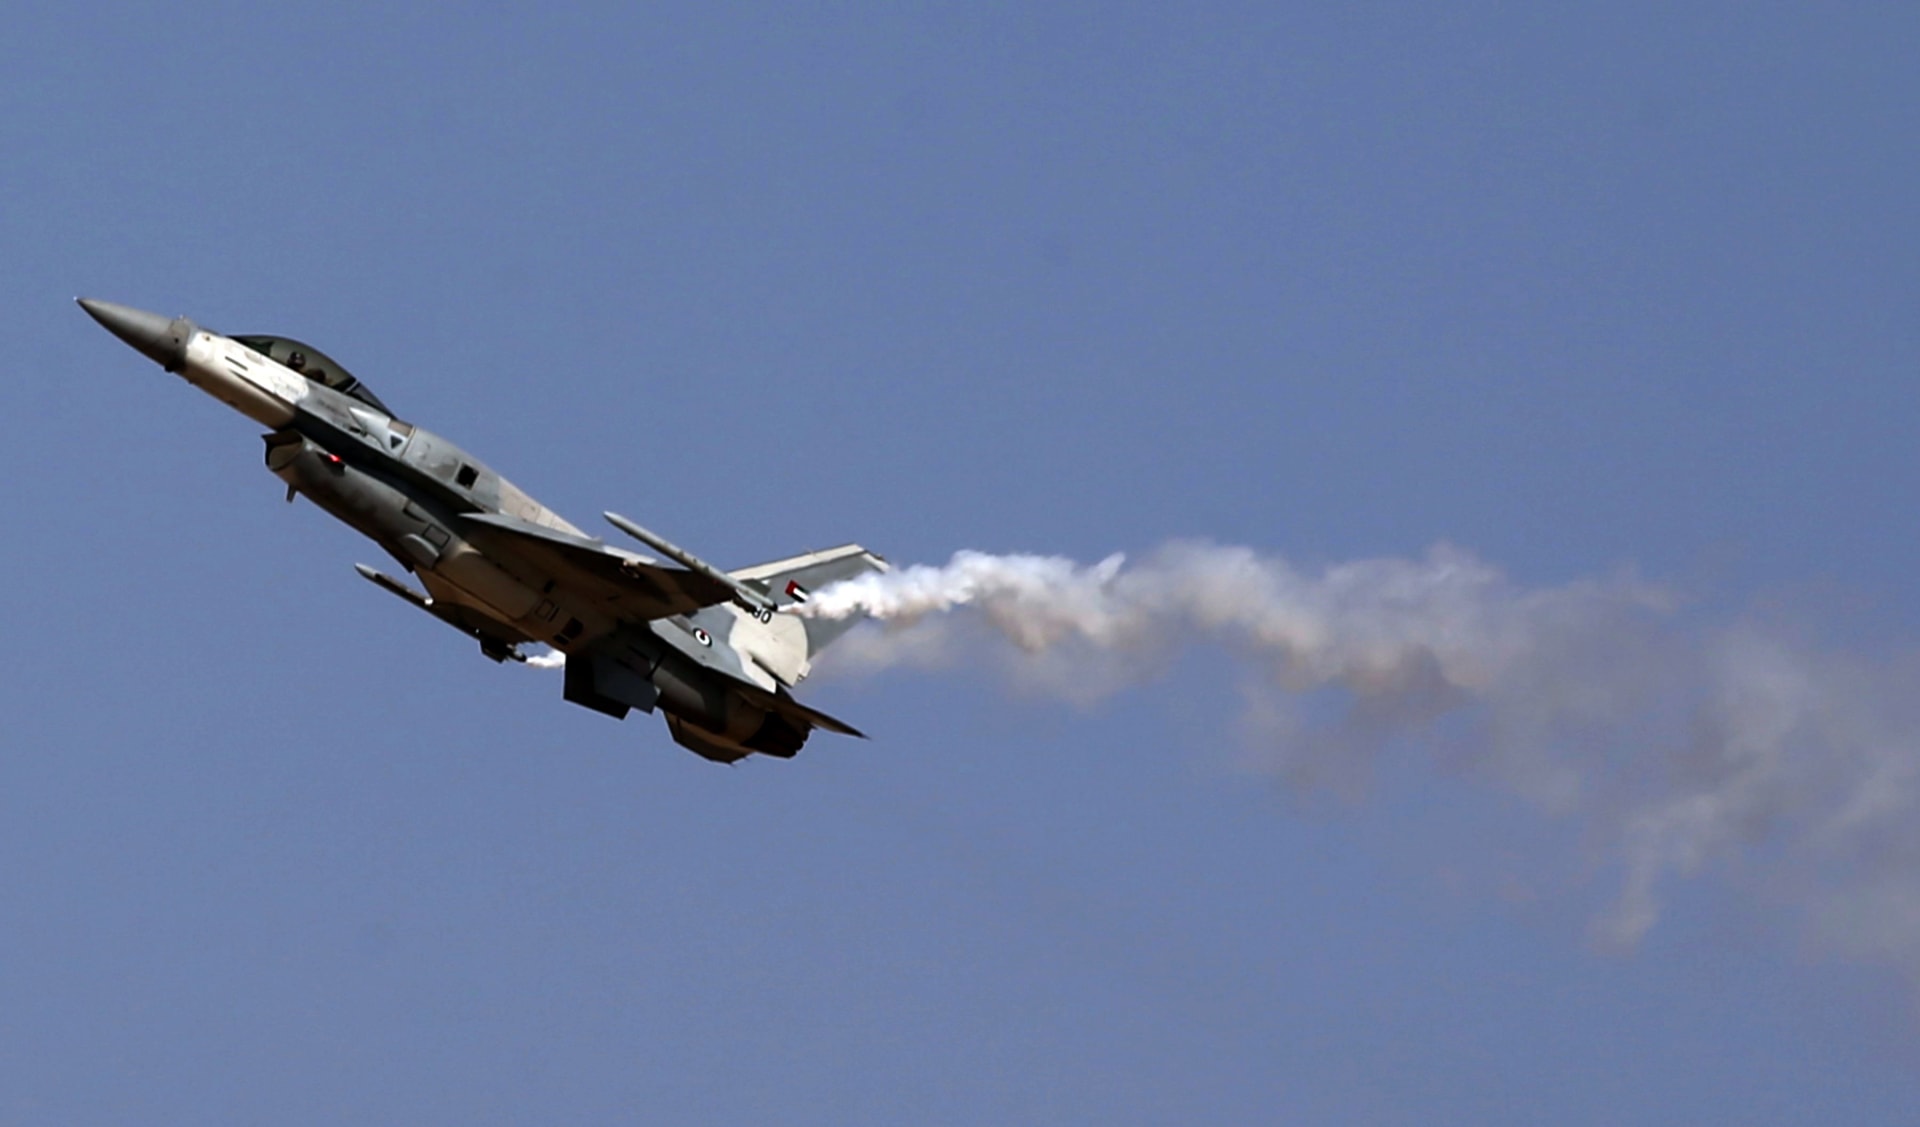 القوات المسلحة الإماراتية تعلن مقتل طاقم طائرة عسكرية إثر تحطمها أثناء طلعة تدريبية